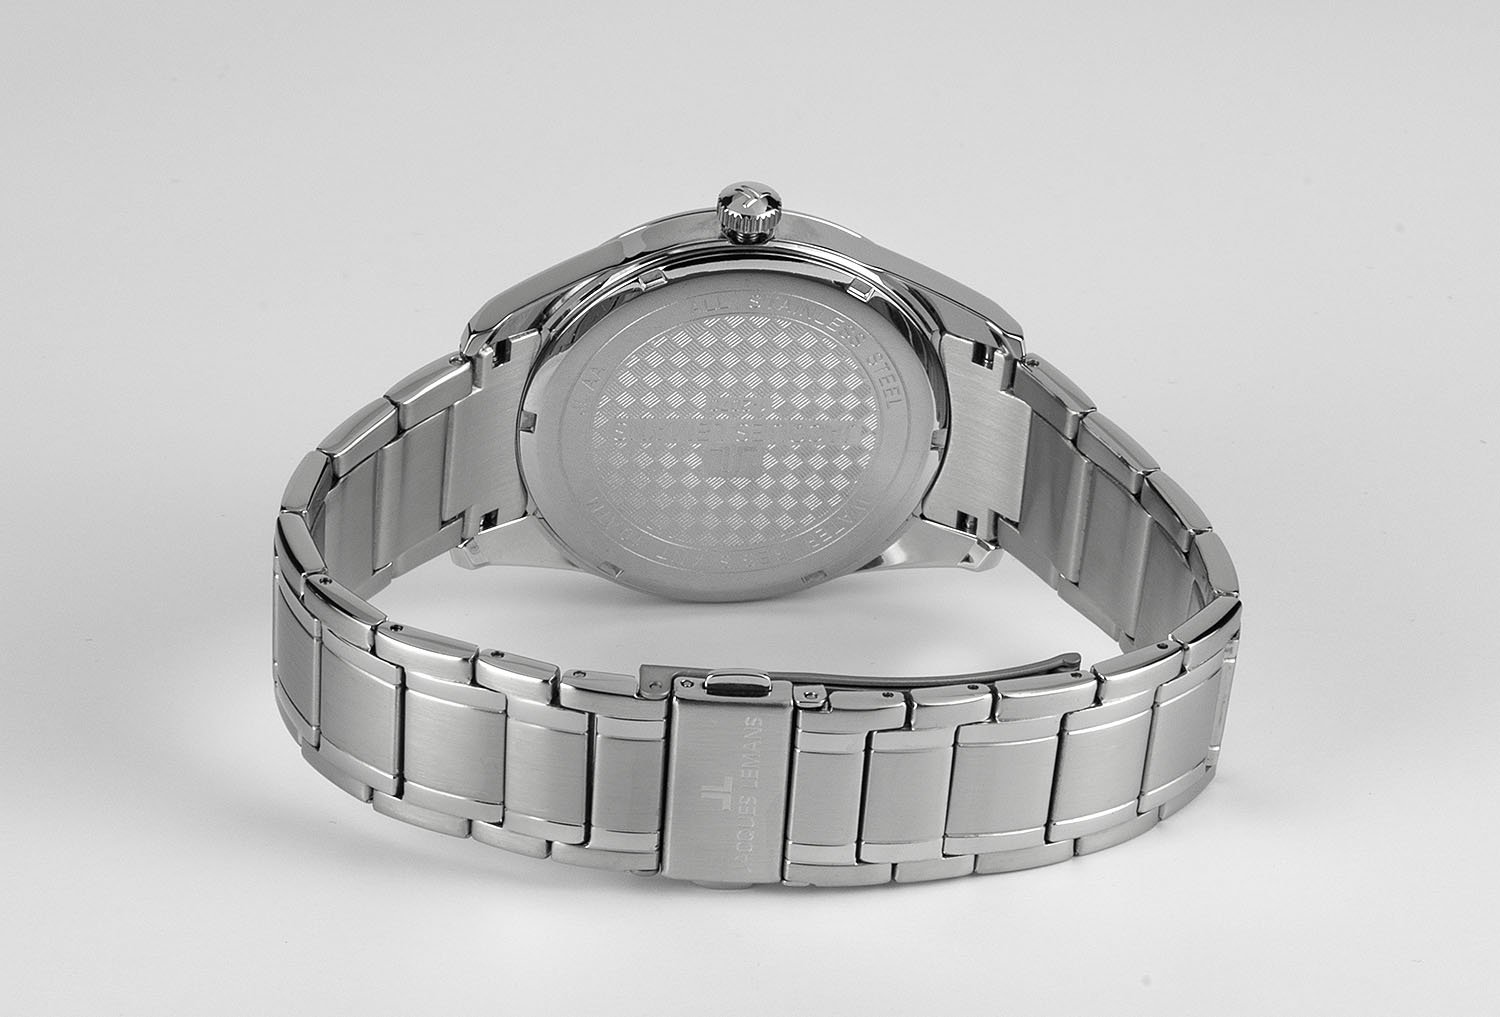 1-2070D, наручные часы Jacques Lemans